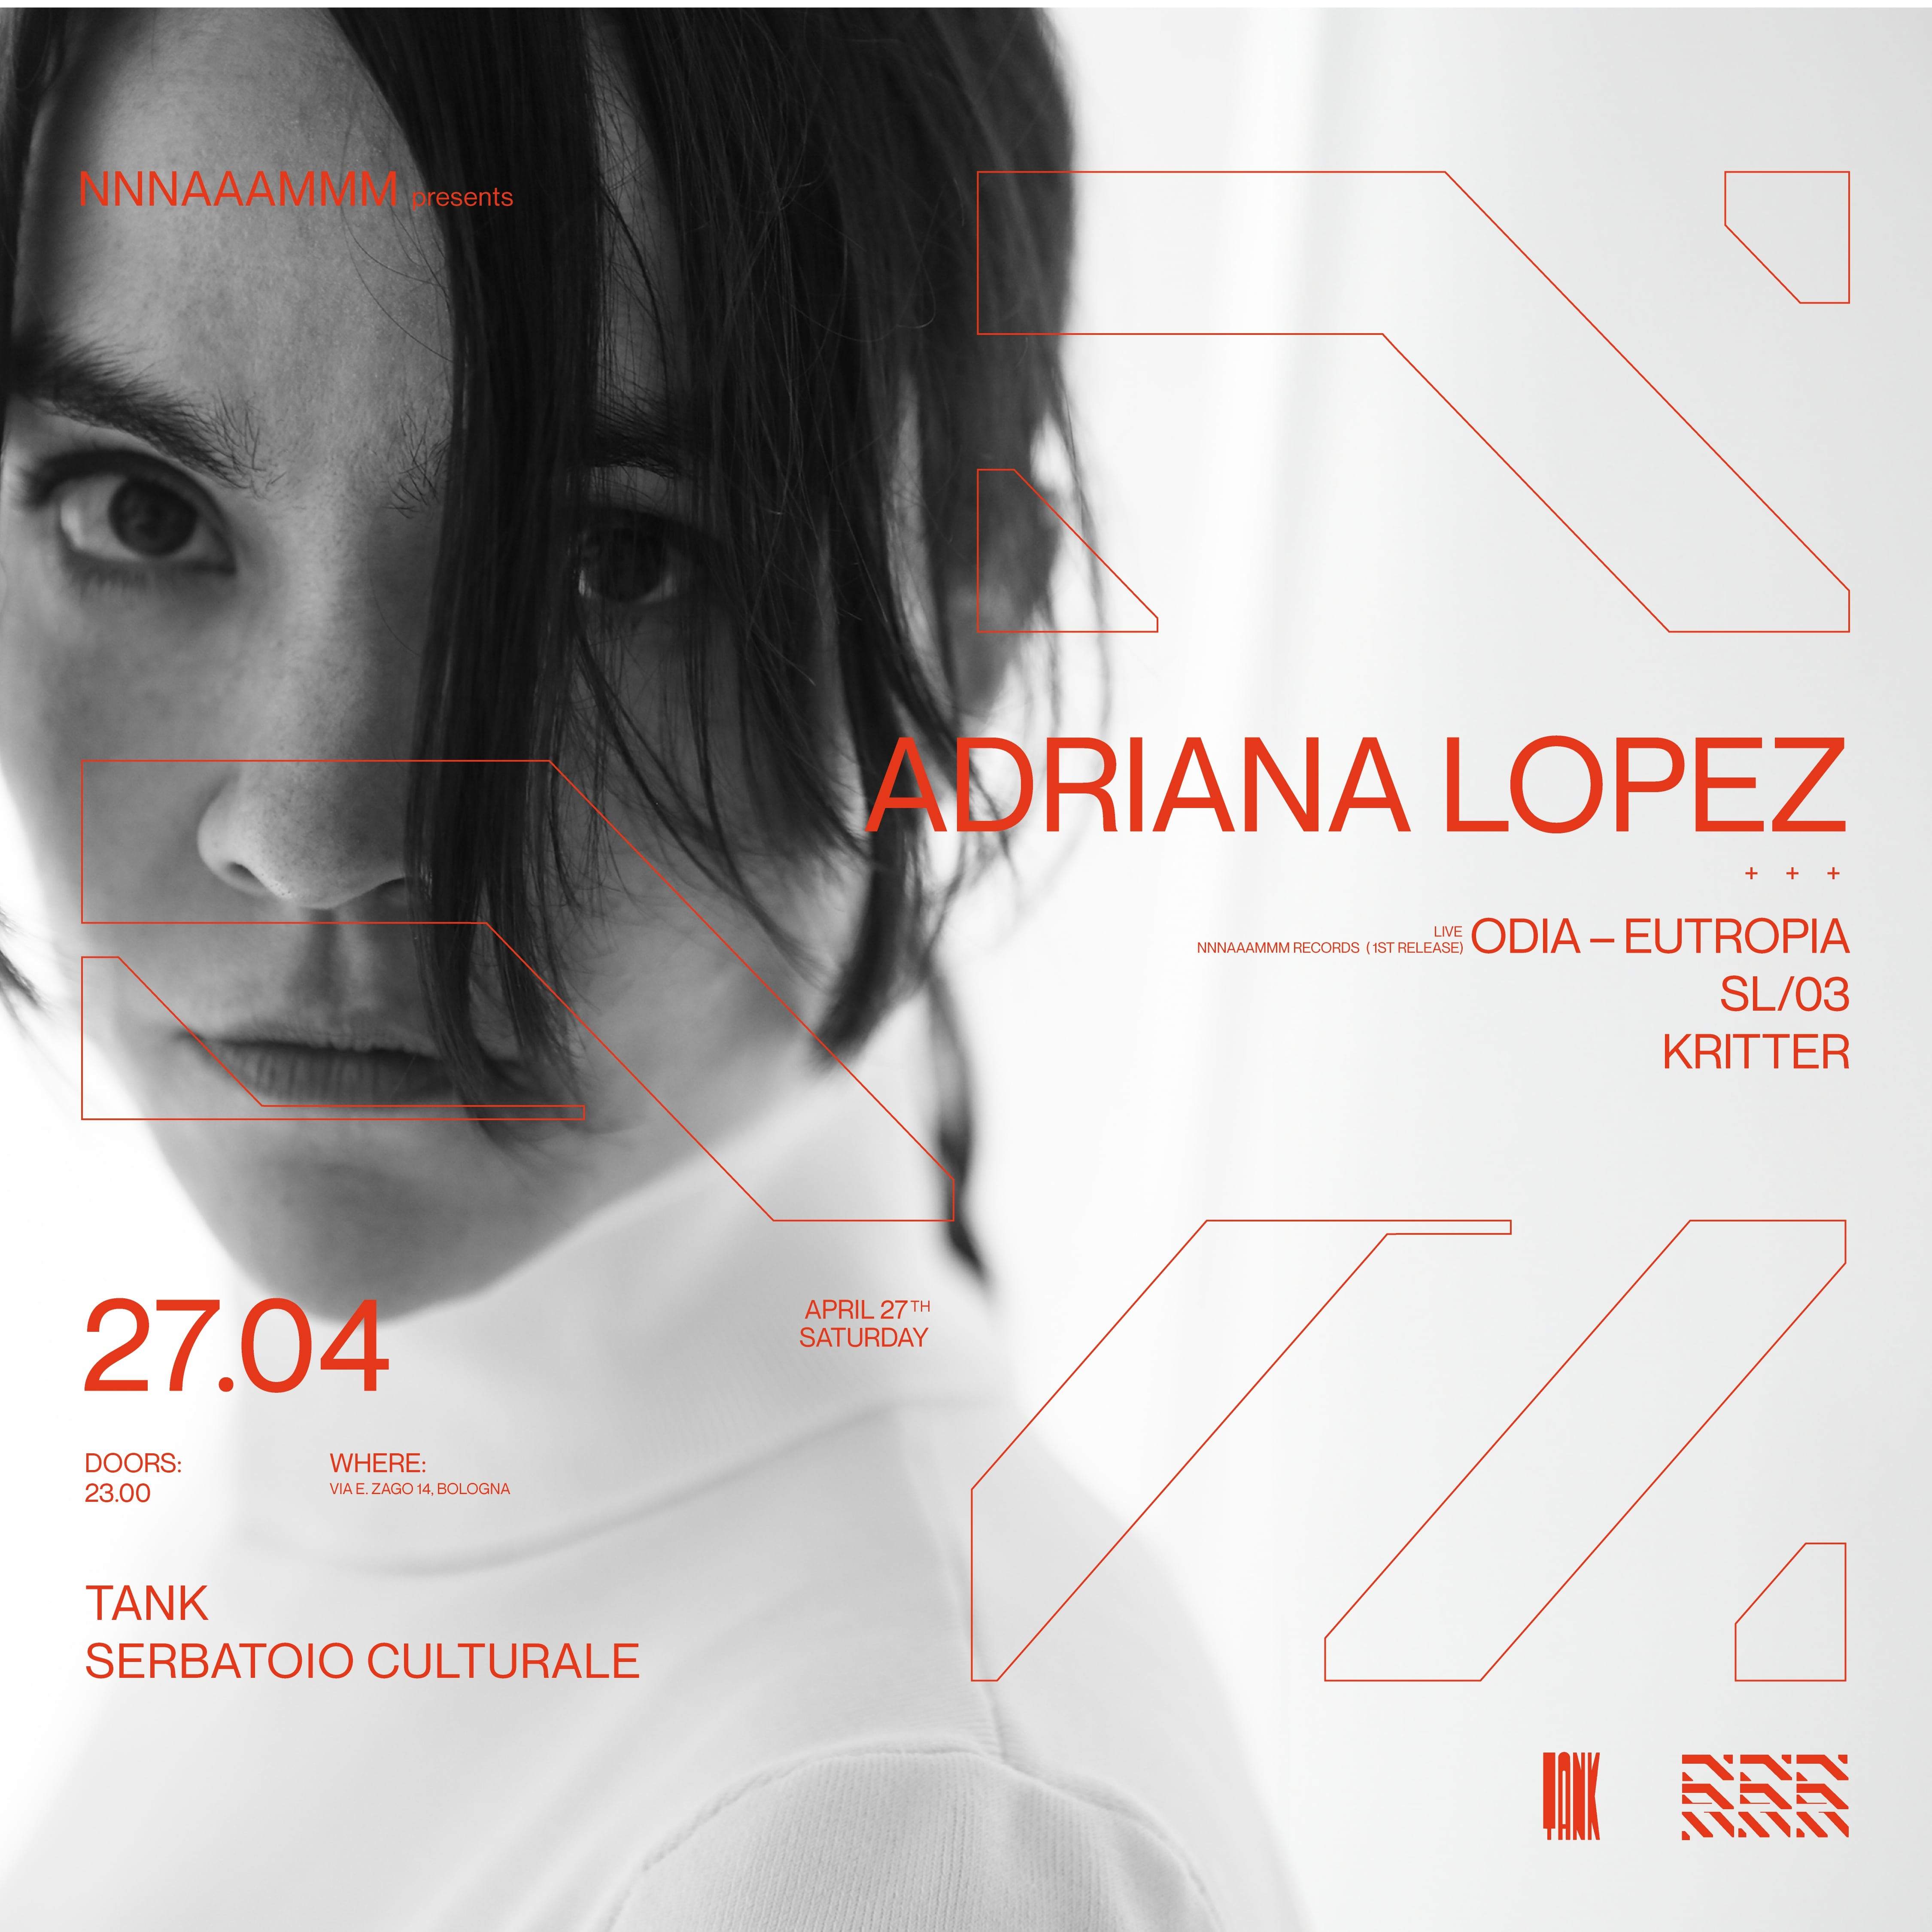 NNNAAAMMM pres. Adriana Lopez /ODIA / SL/03 / KRITTER - フライヤー表